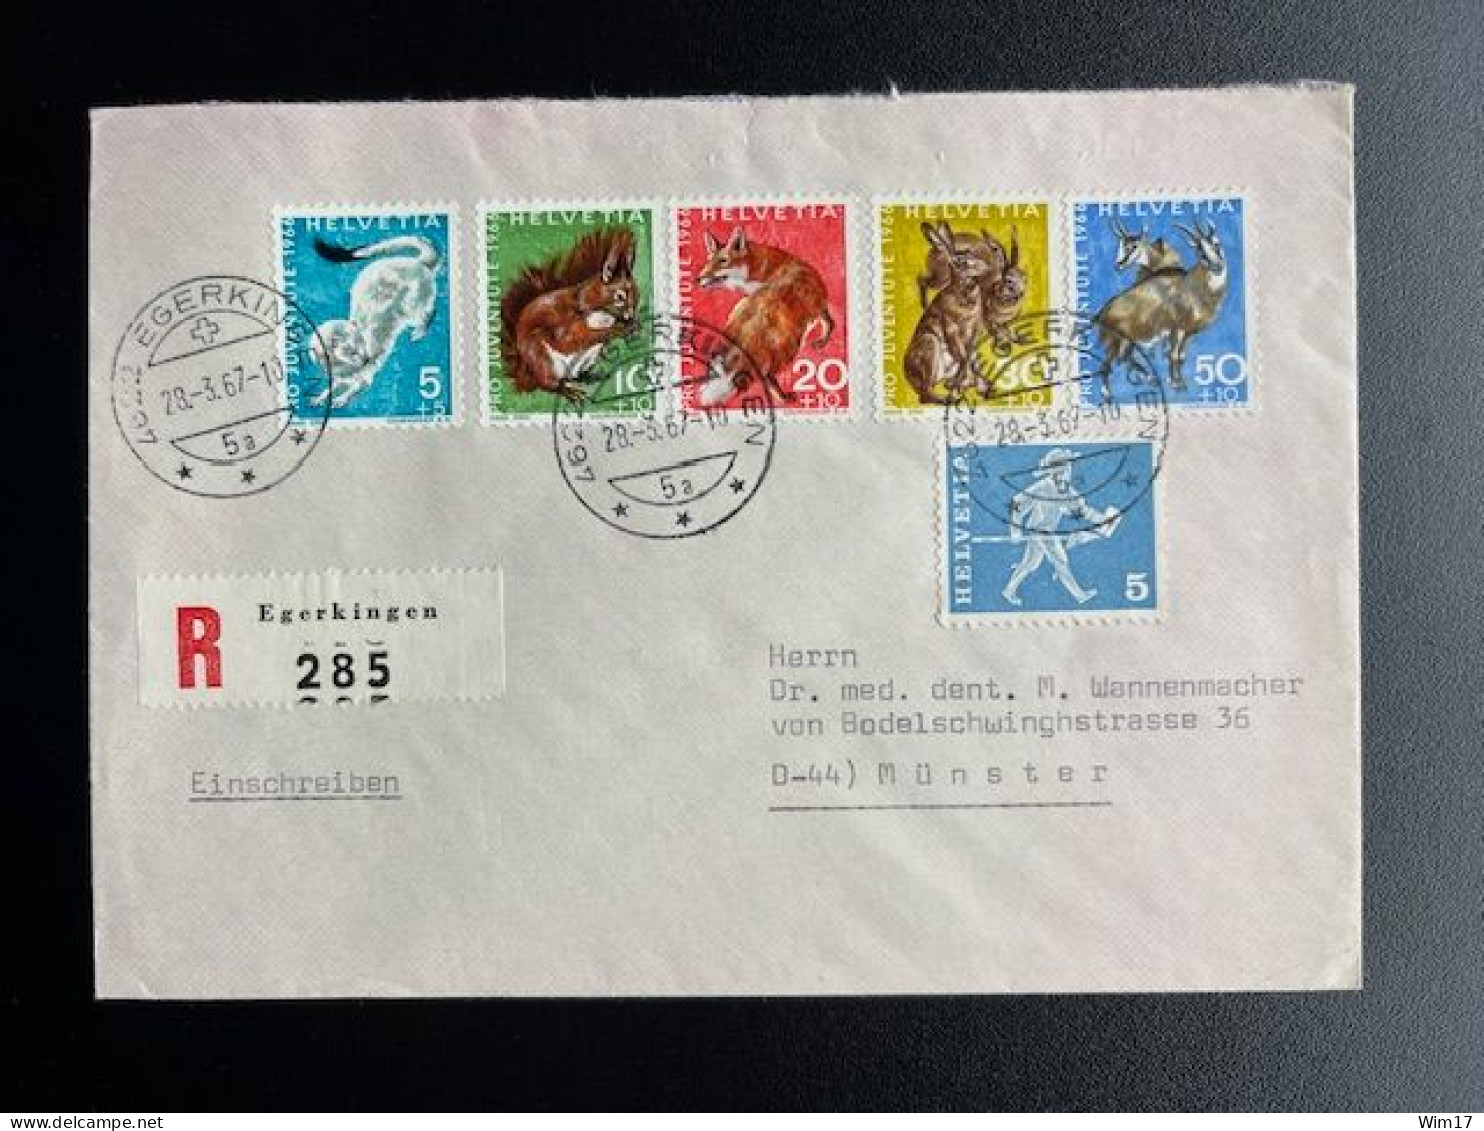 SWITZERLAND 1967 REGISTERED LETTER EGERKINGEN TO MUNSTER 28-03-1967 ZWITSERLAND SUISSE SCHWEIZ EINSCHREIBEN - Unused Stamps